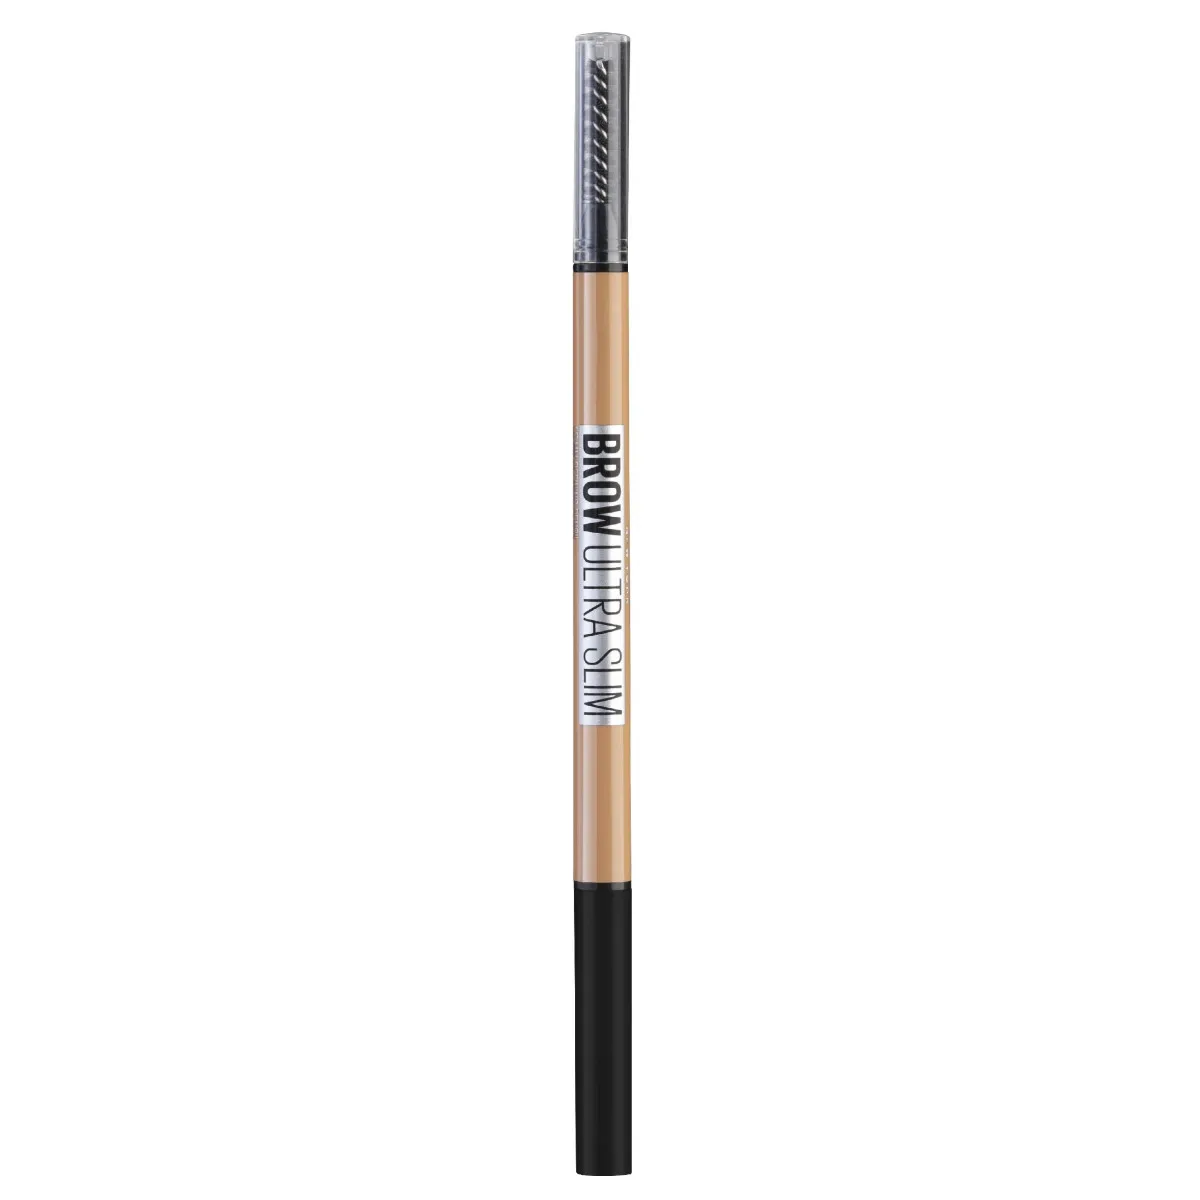 Maybelline Brow Express Ultra Slim odstín 01 Blonde tužka na obočí 9 g